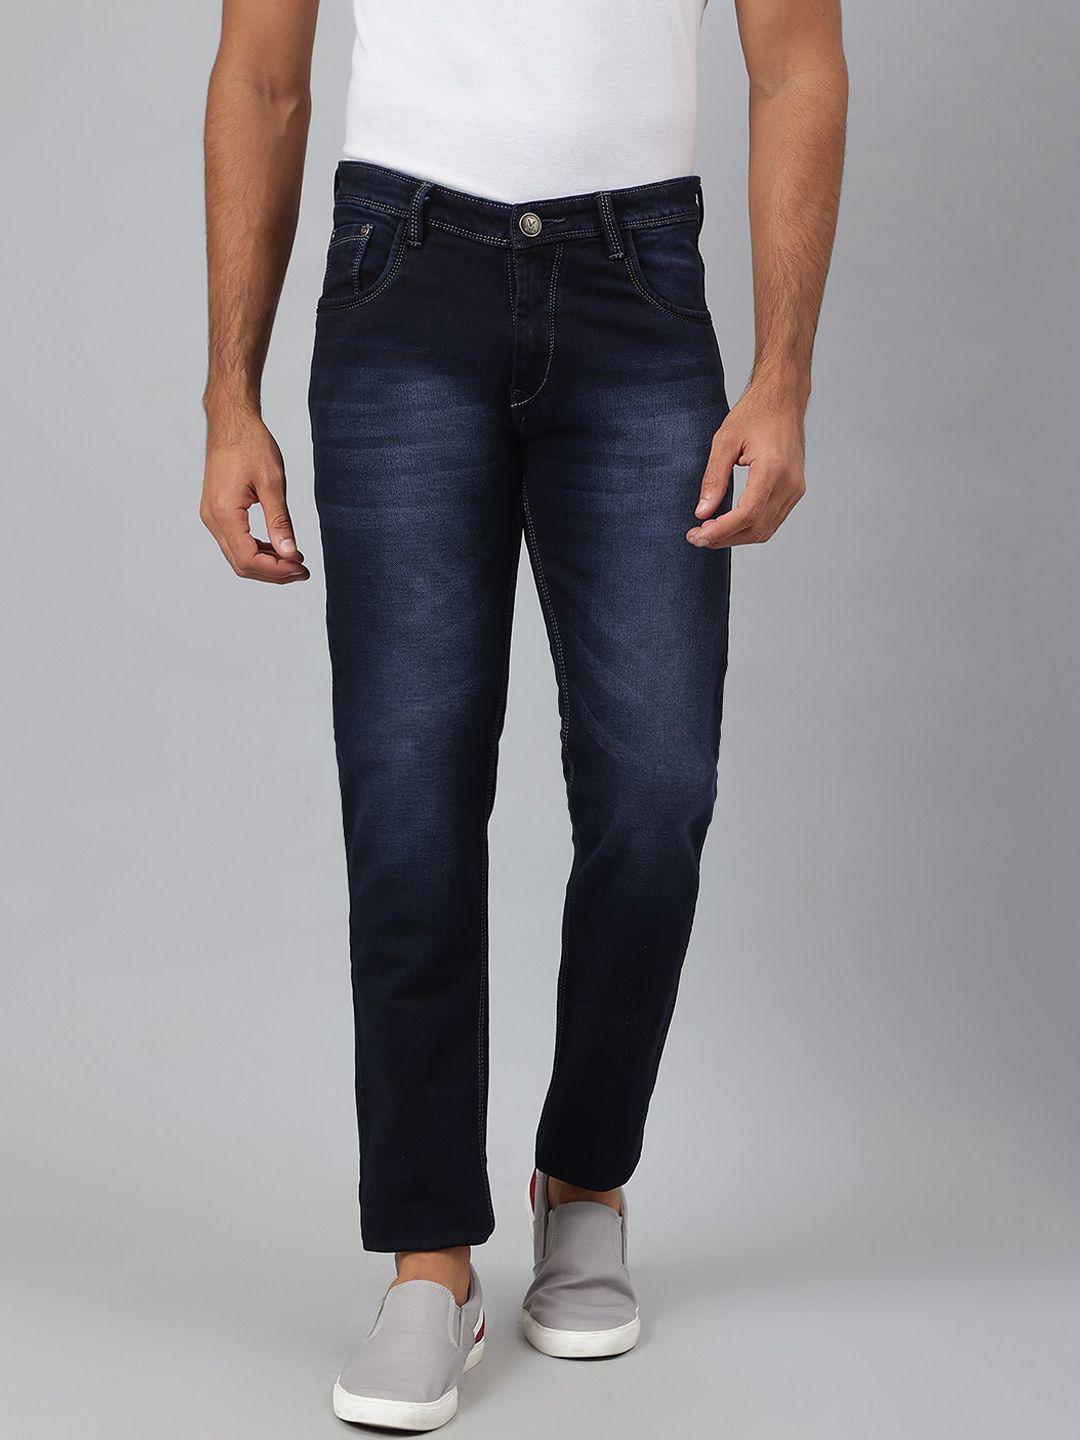 mr button men navy blue slim fit light fade cotton jeans